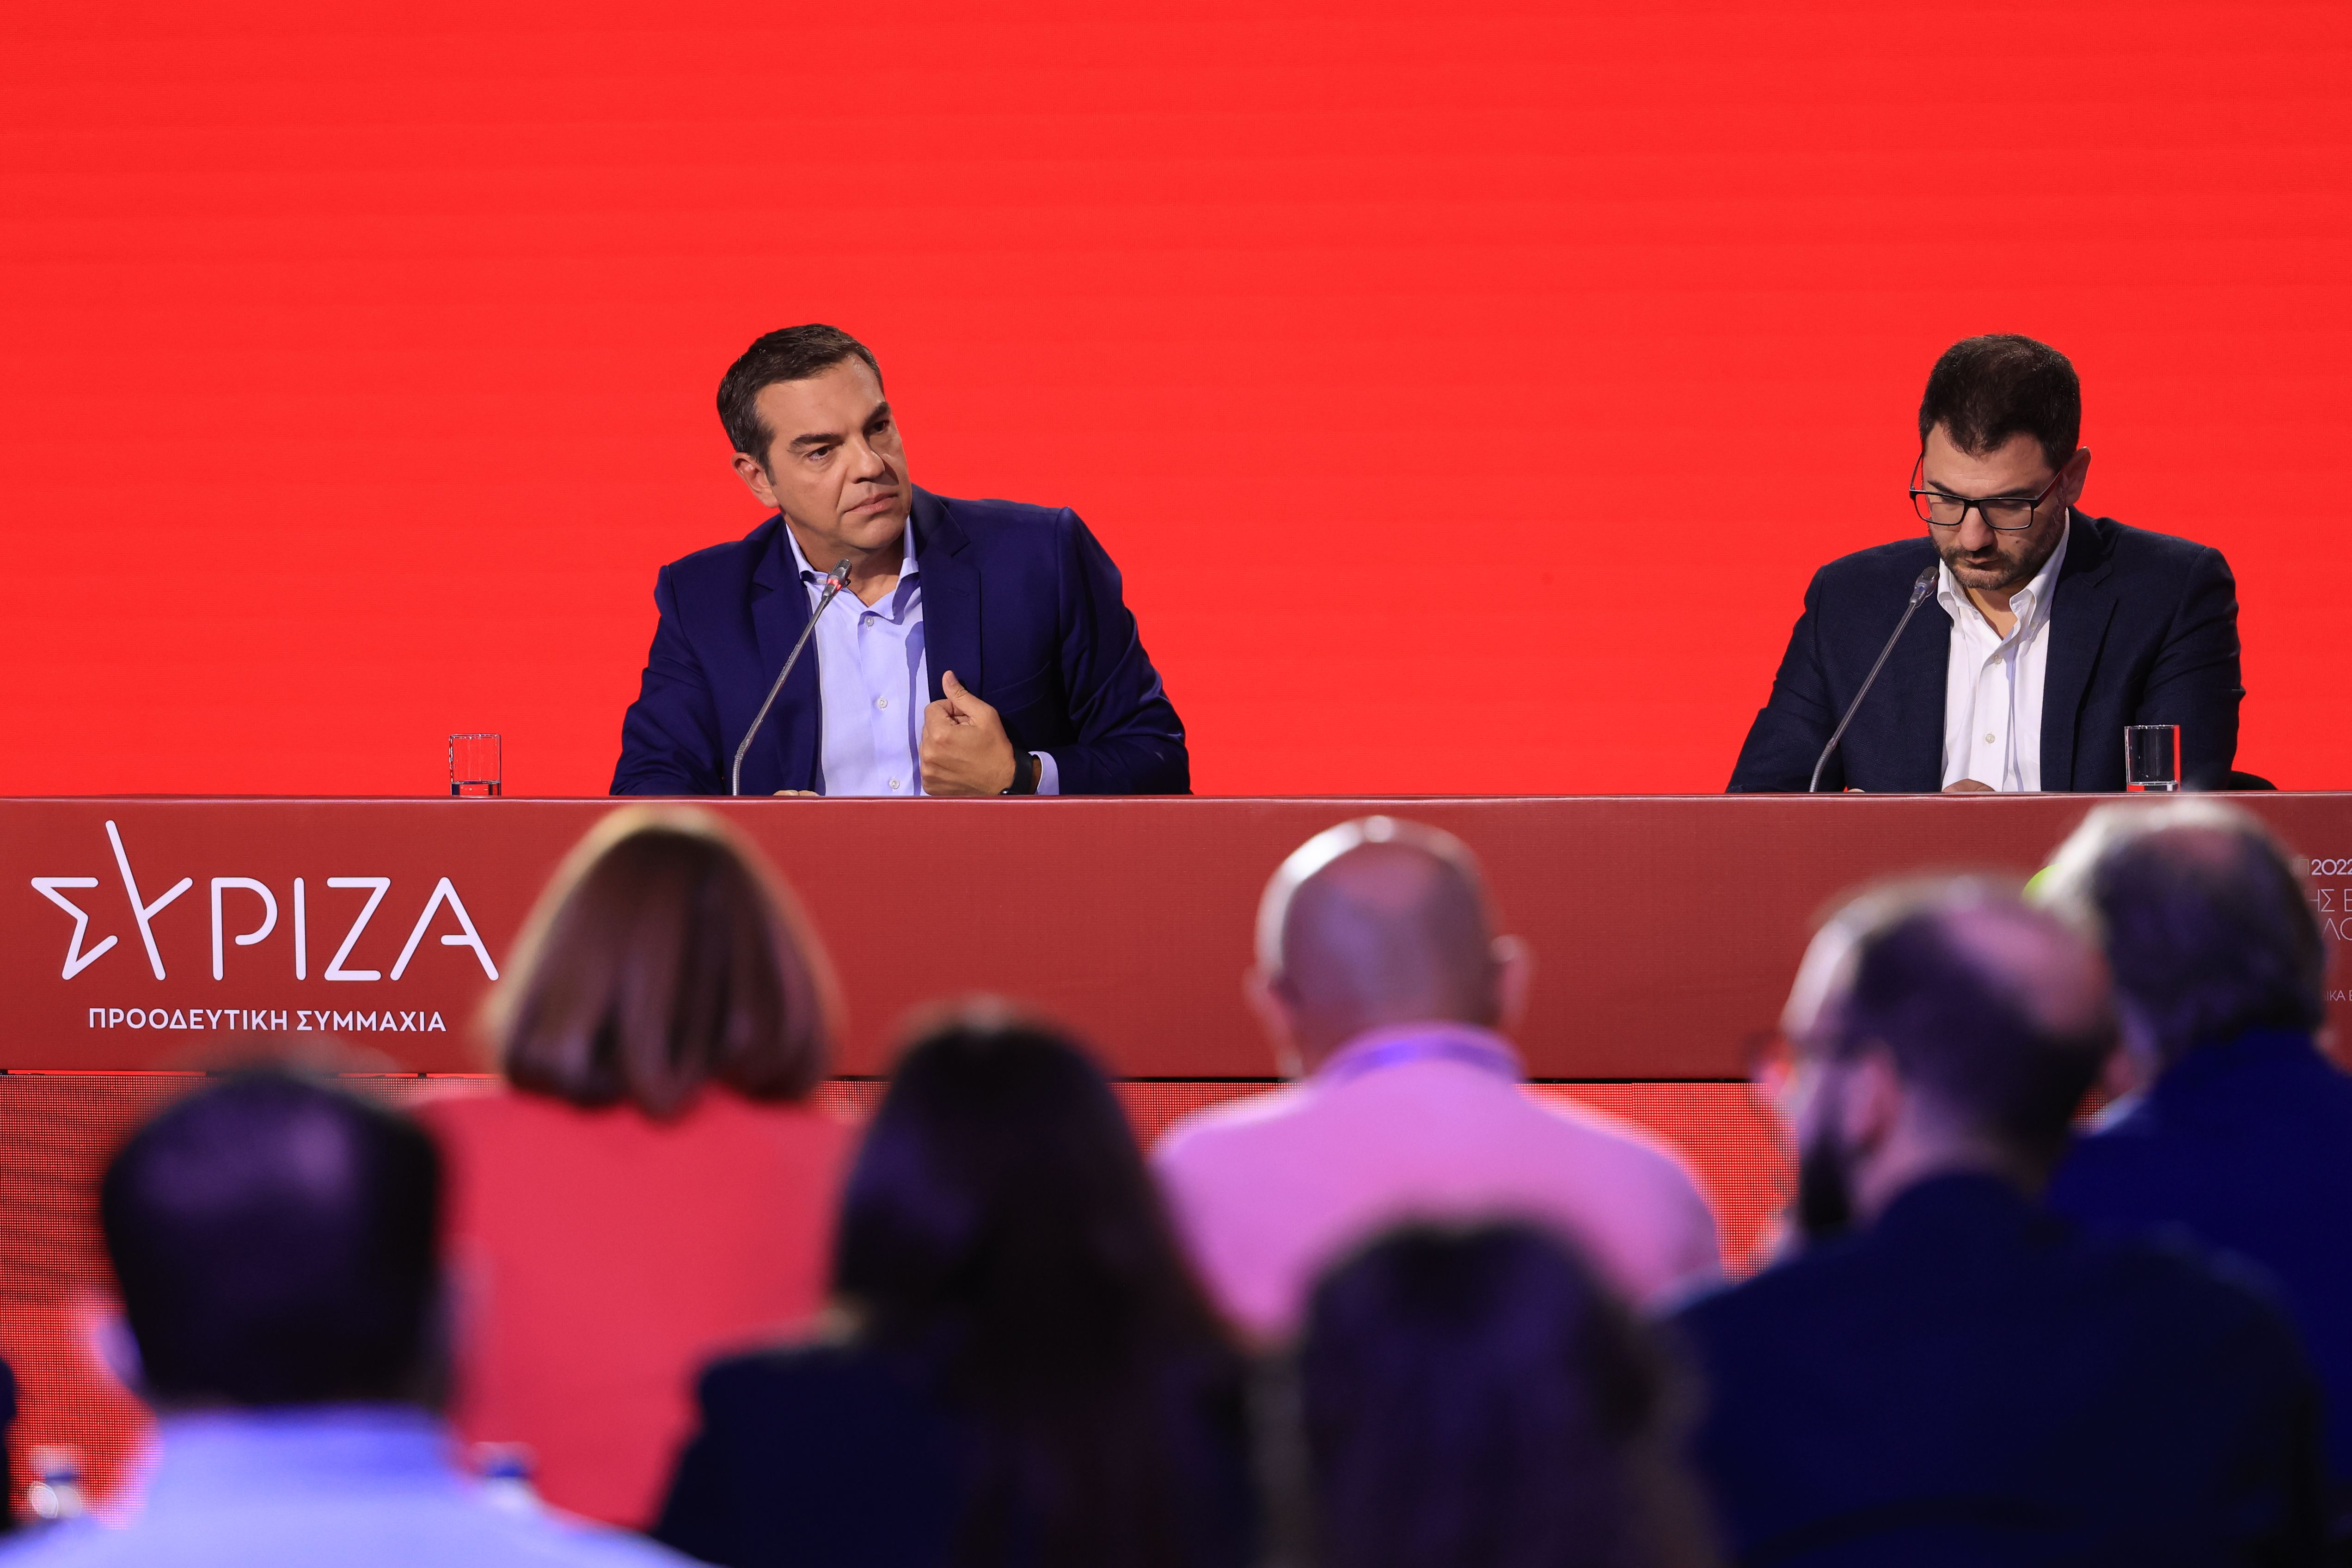 Συνέντευξη του Προέδρου του ΣΥΡΙΖΑ-Προοδευτική Συμμαχία, Αλέξη Τσίπρα στην 86η Διεθνή Έκθεση Θεσσαλονίκης